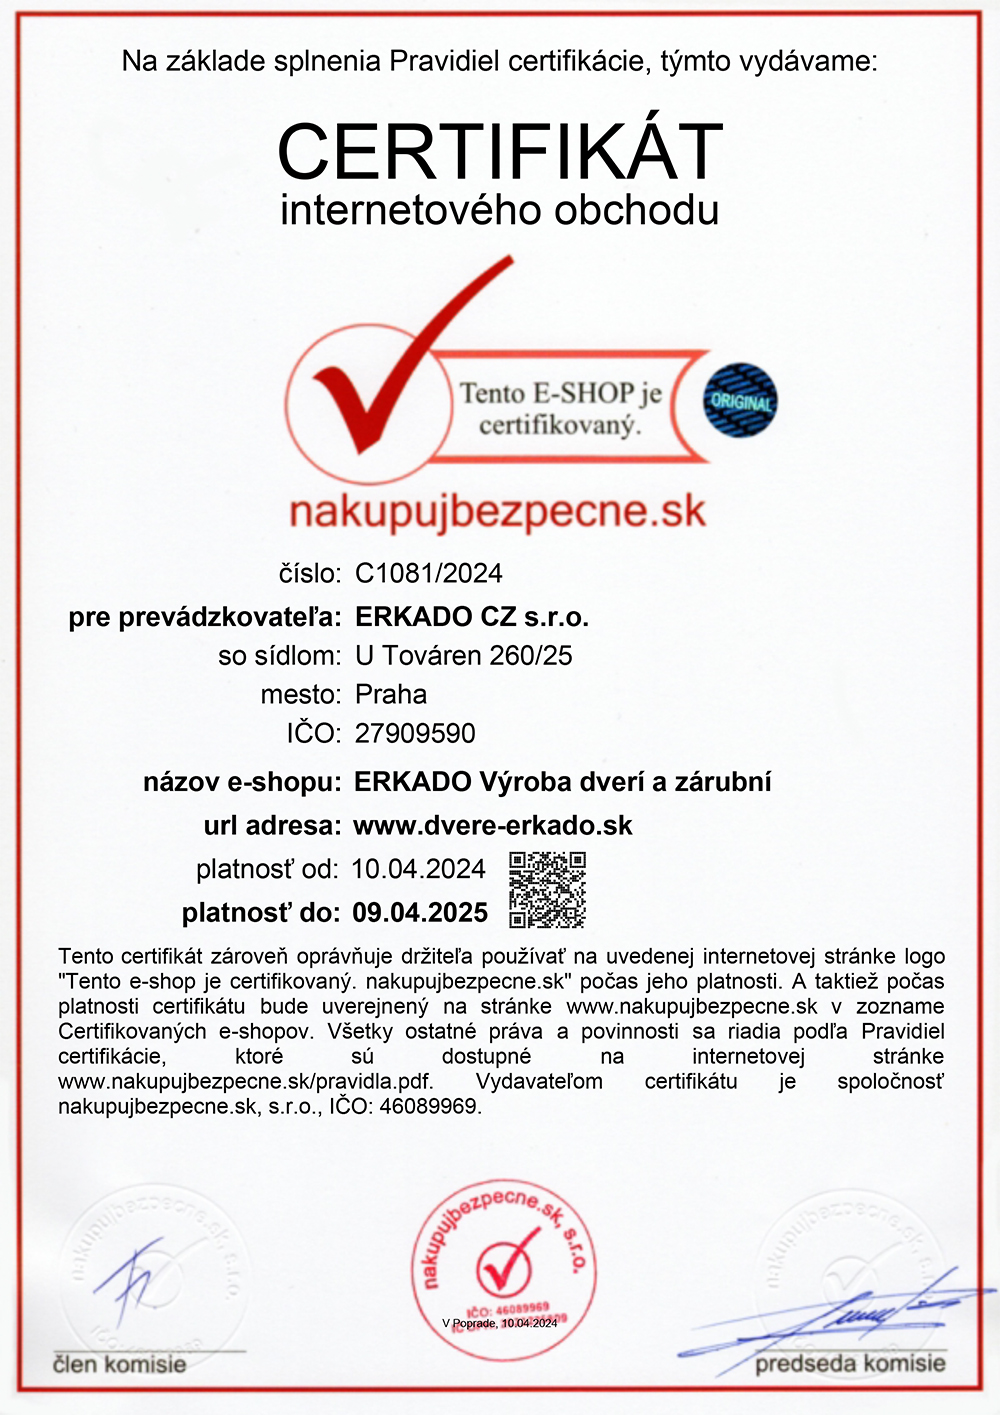 Certifikát nakupujbezpecne.sk - 2024-2025